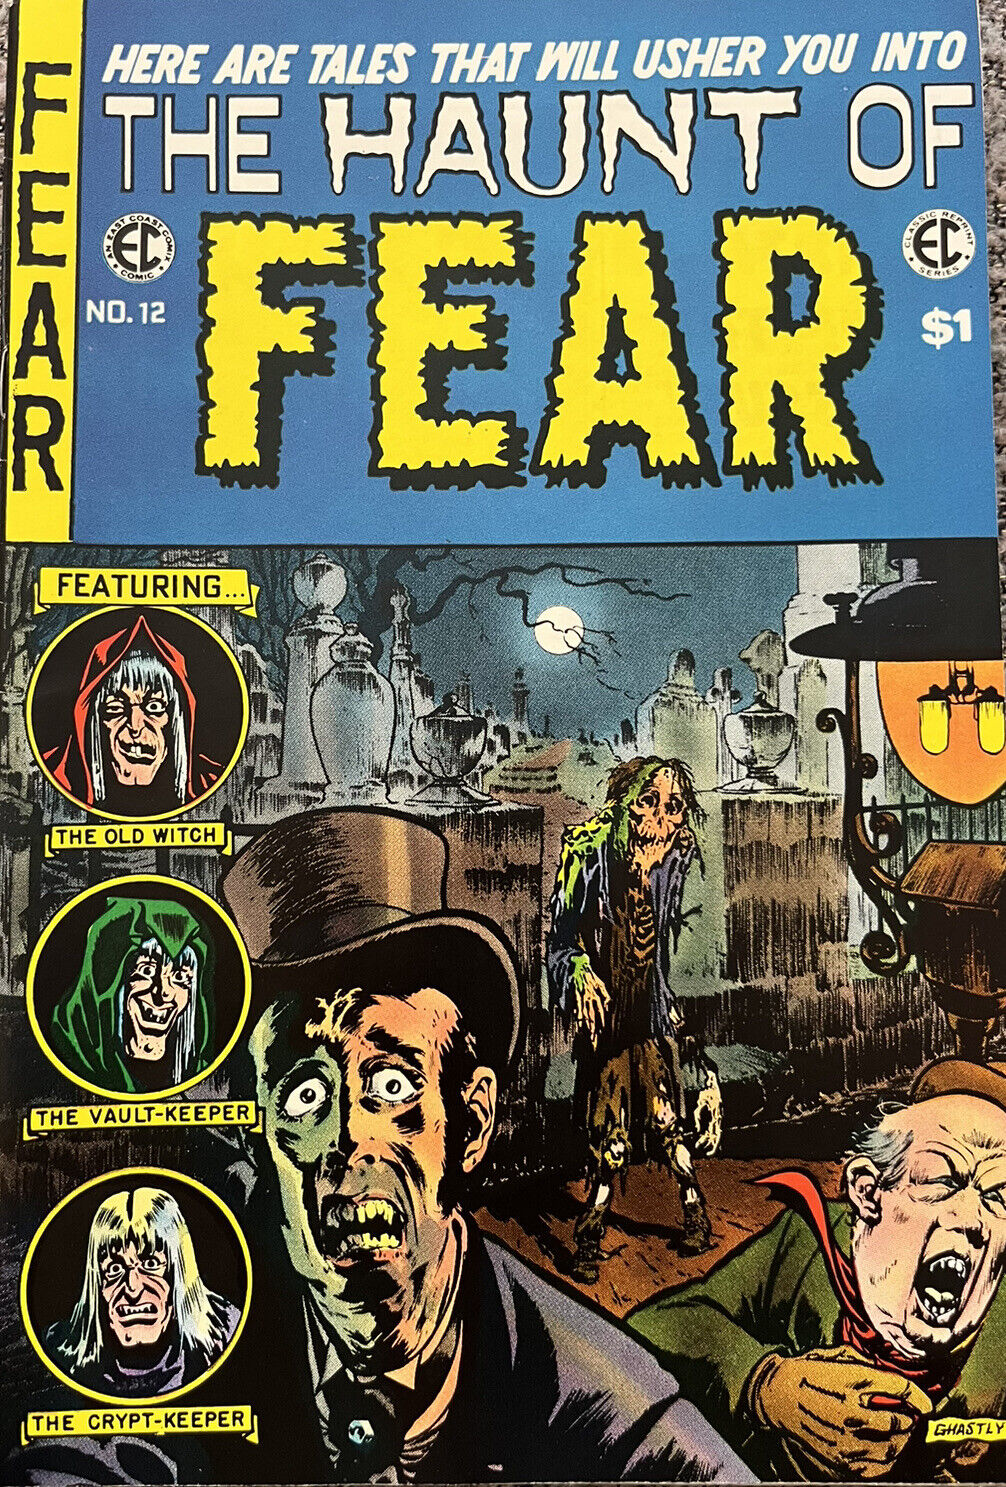 EC Classic Reprint #4 (1973):  The Haunt of Fear #12! Graham Ingels, VF